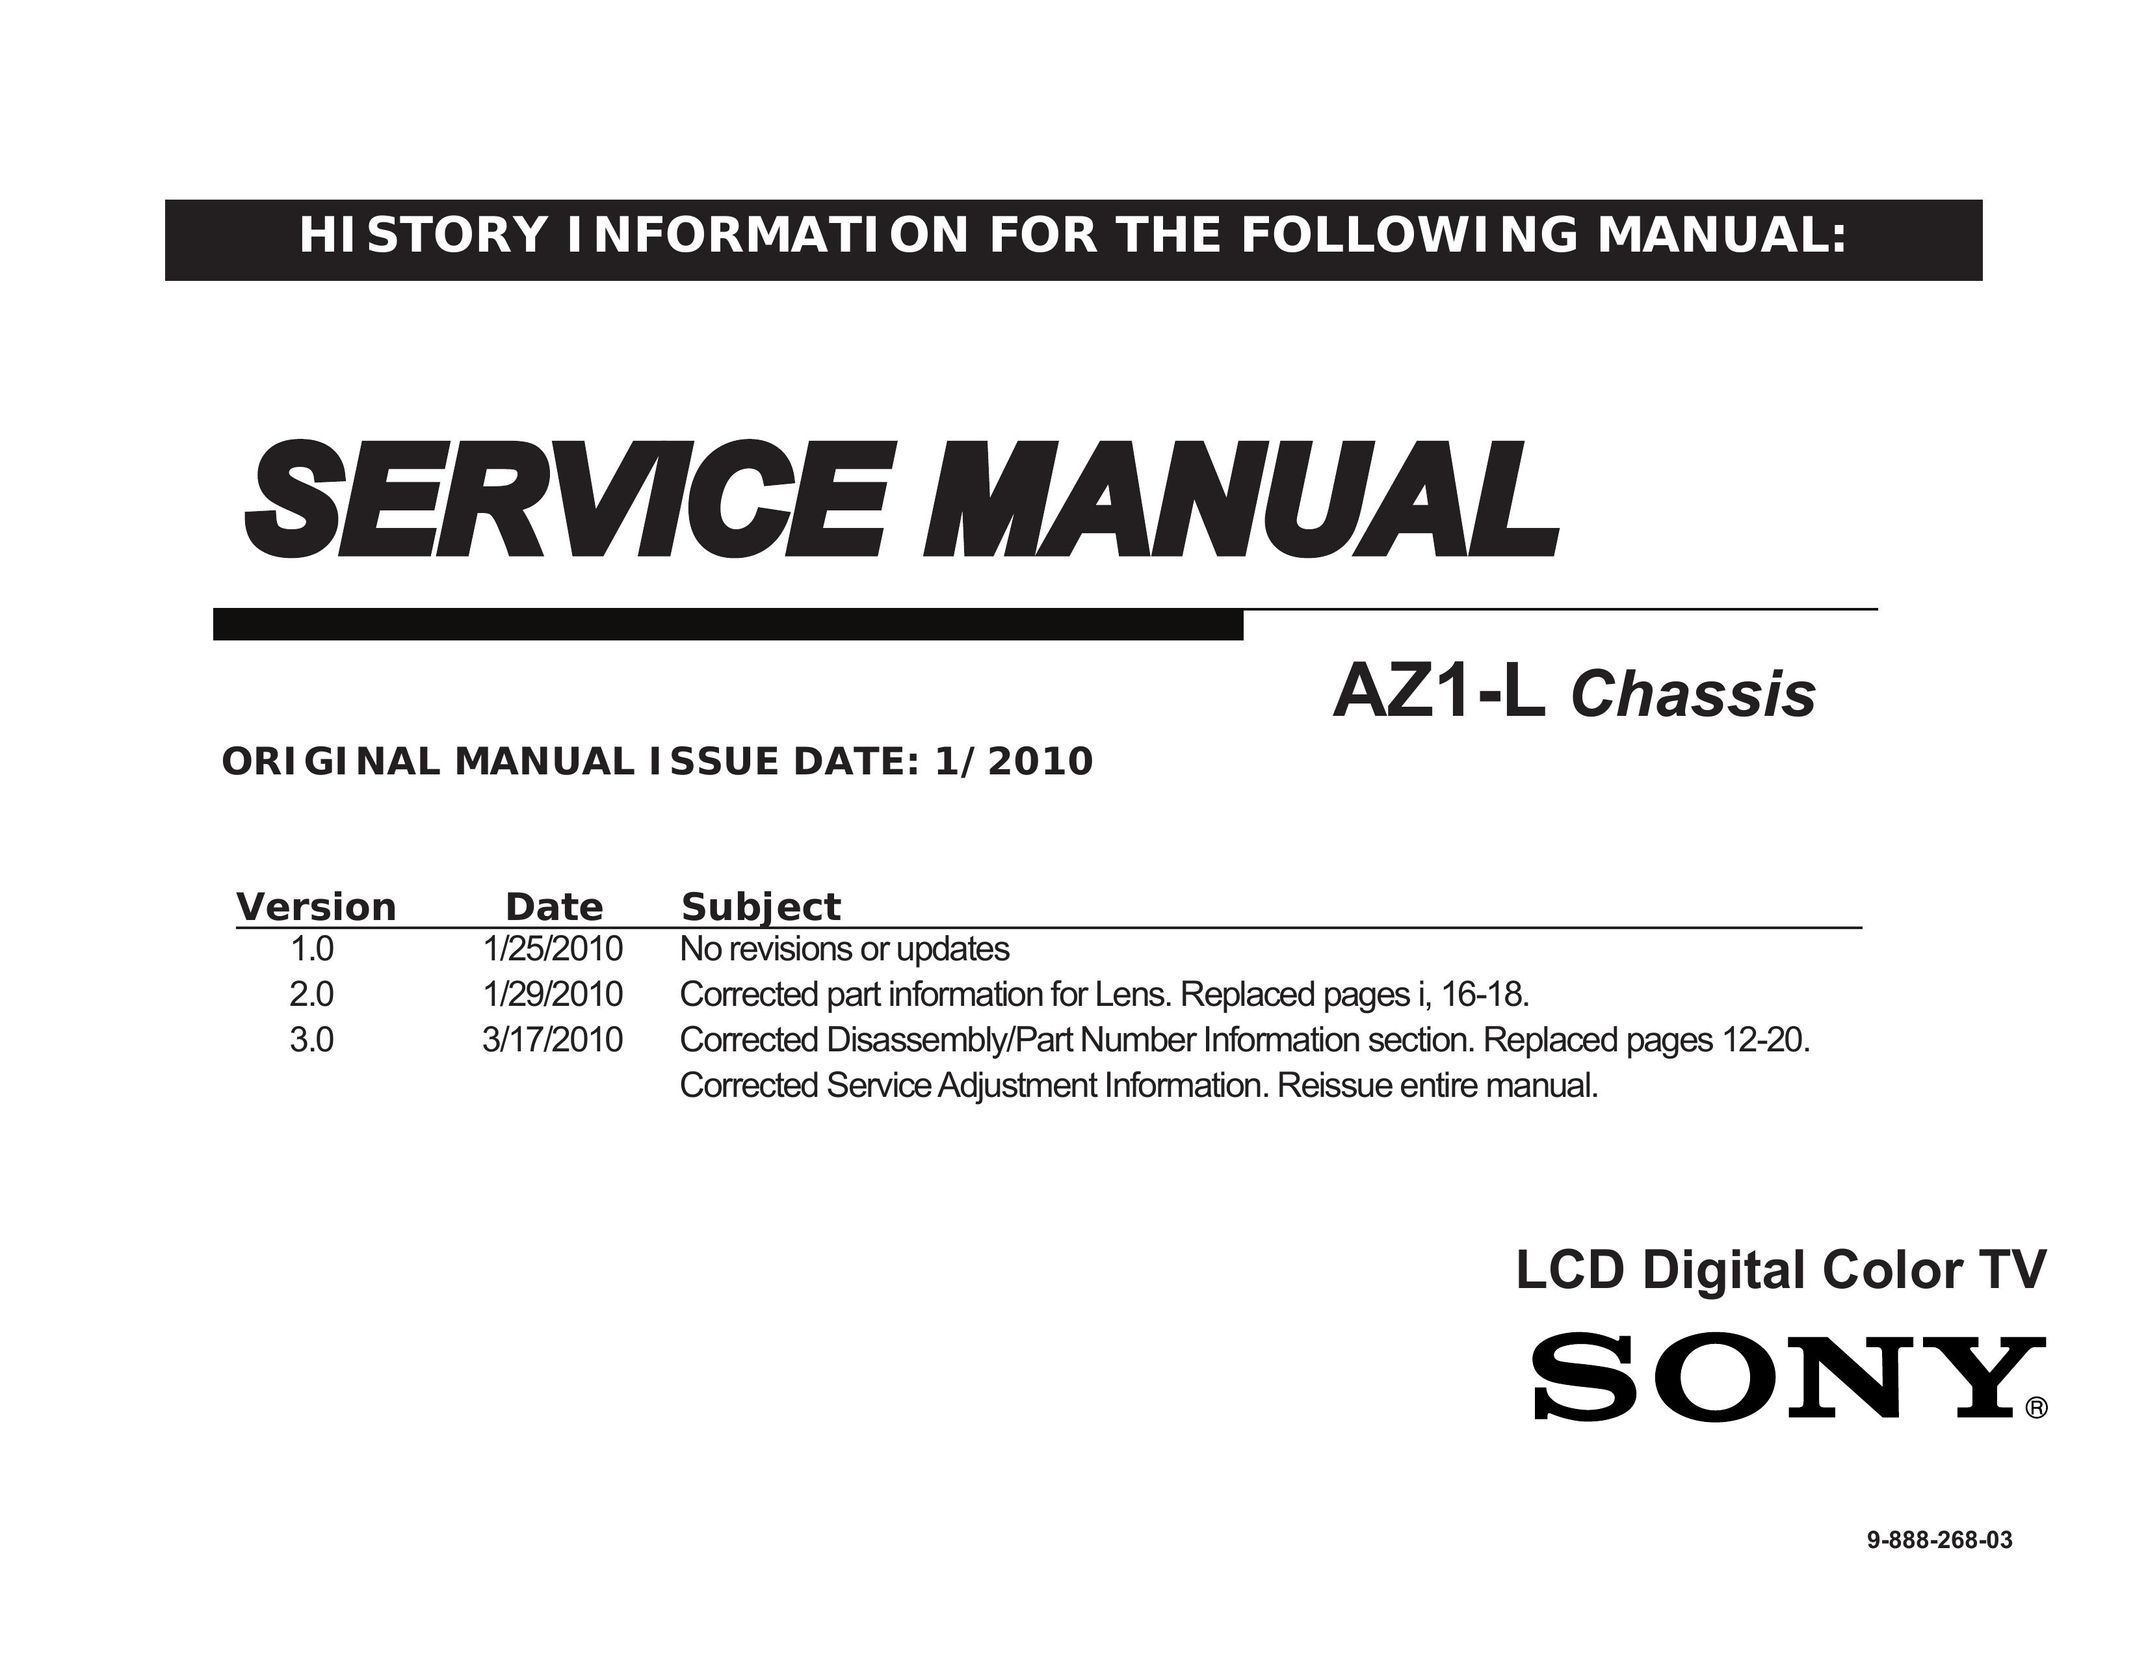 Sony KDL- 60EX703 Car Satellite TV System User Manual